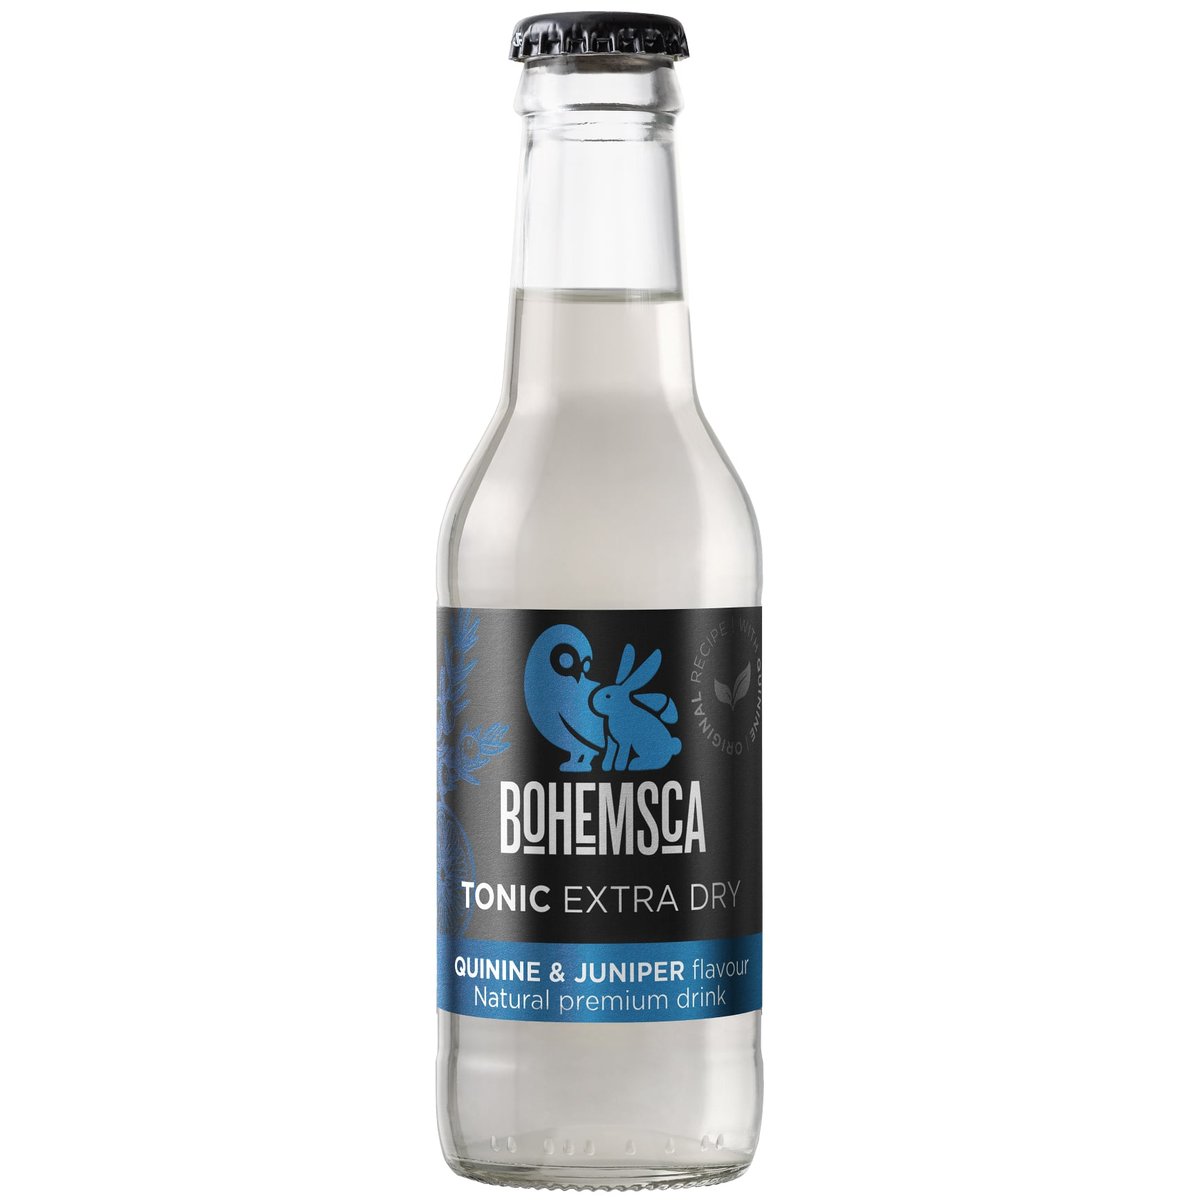 Bohemsca Tonic Extra Dry